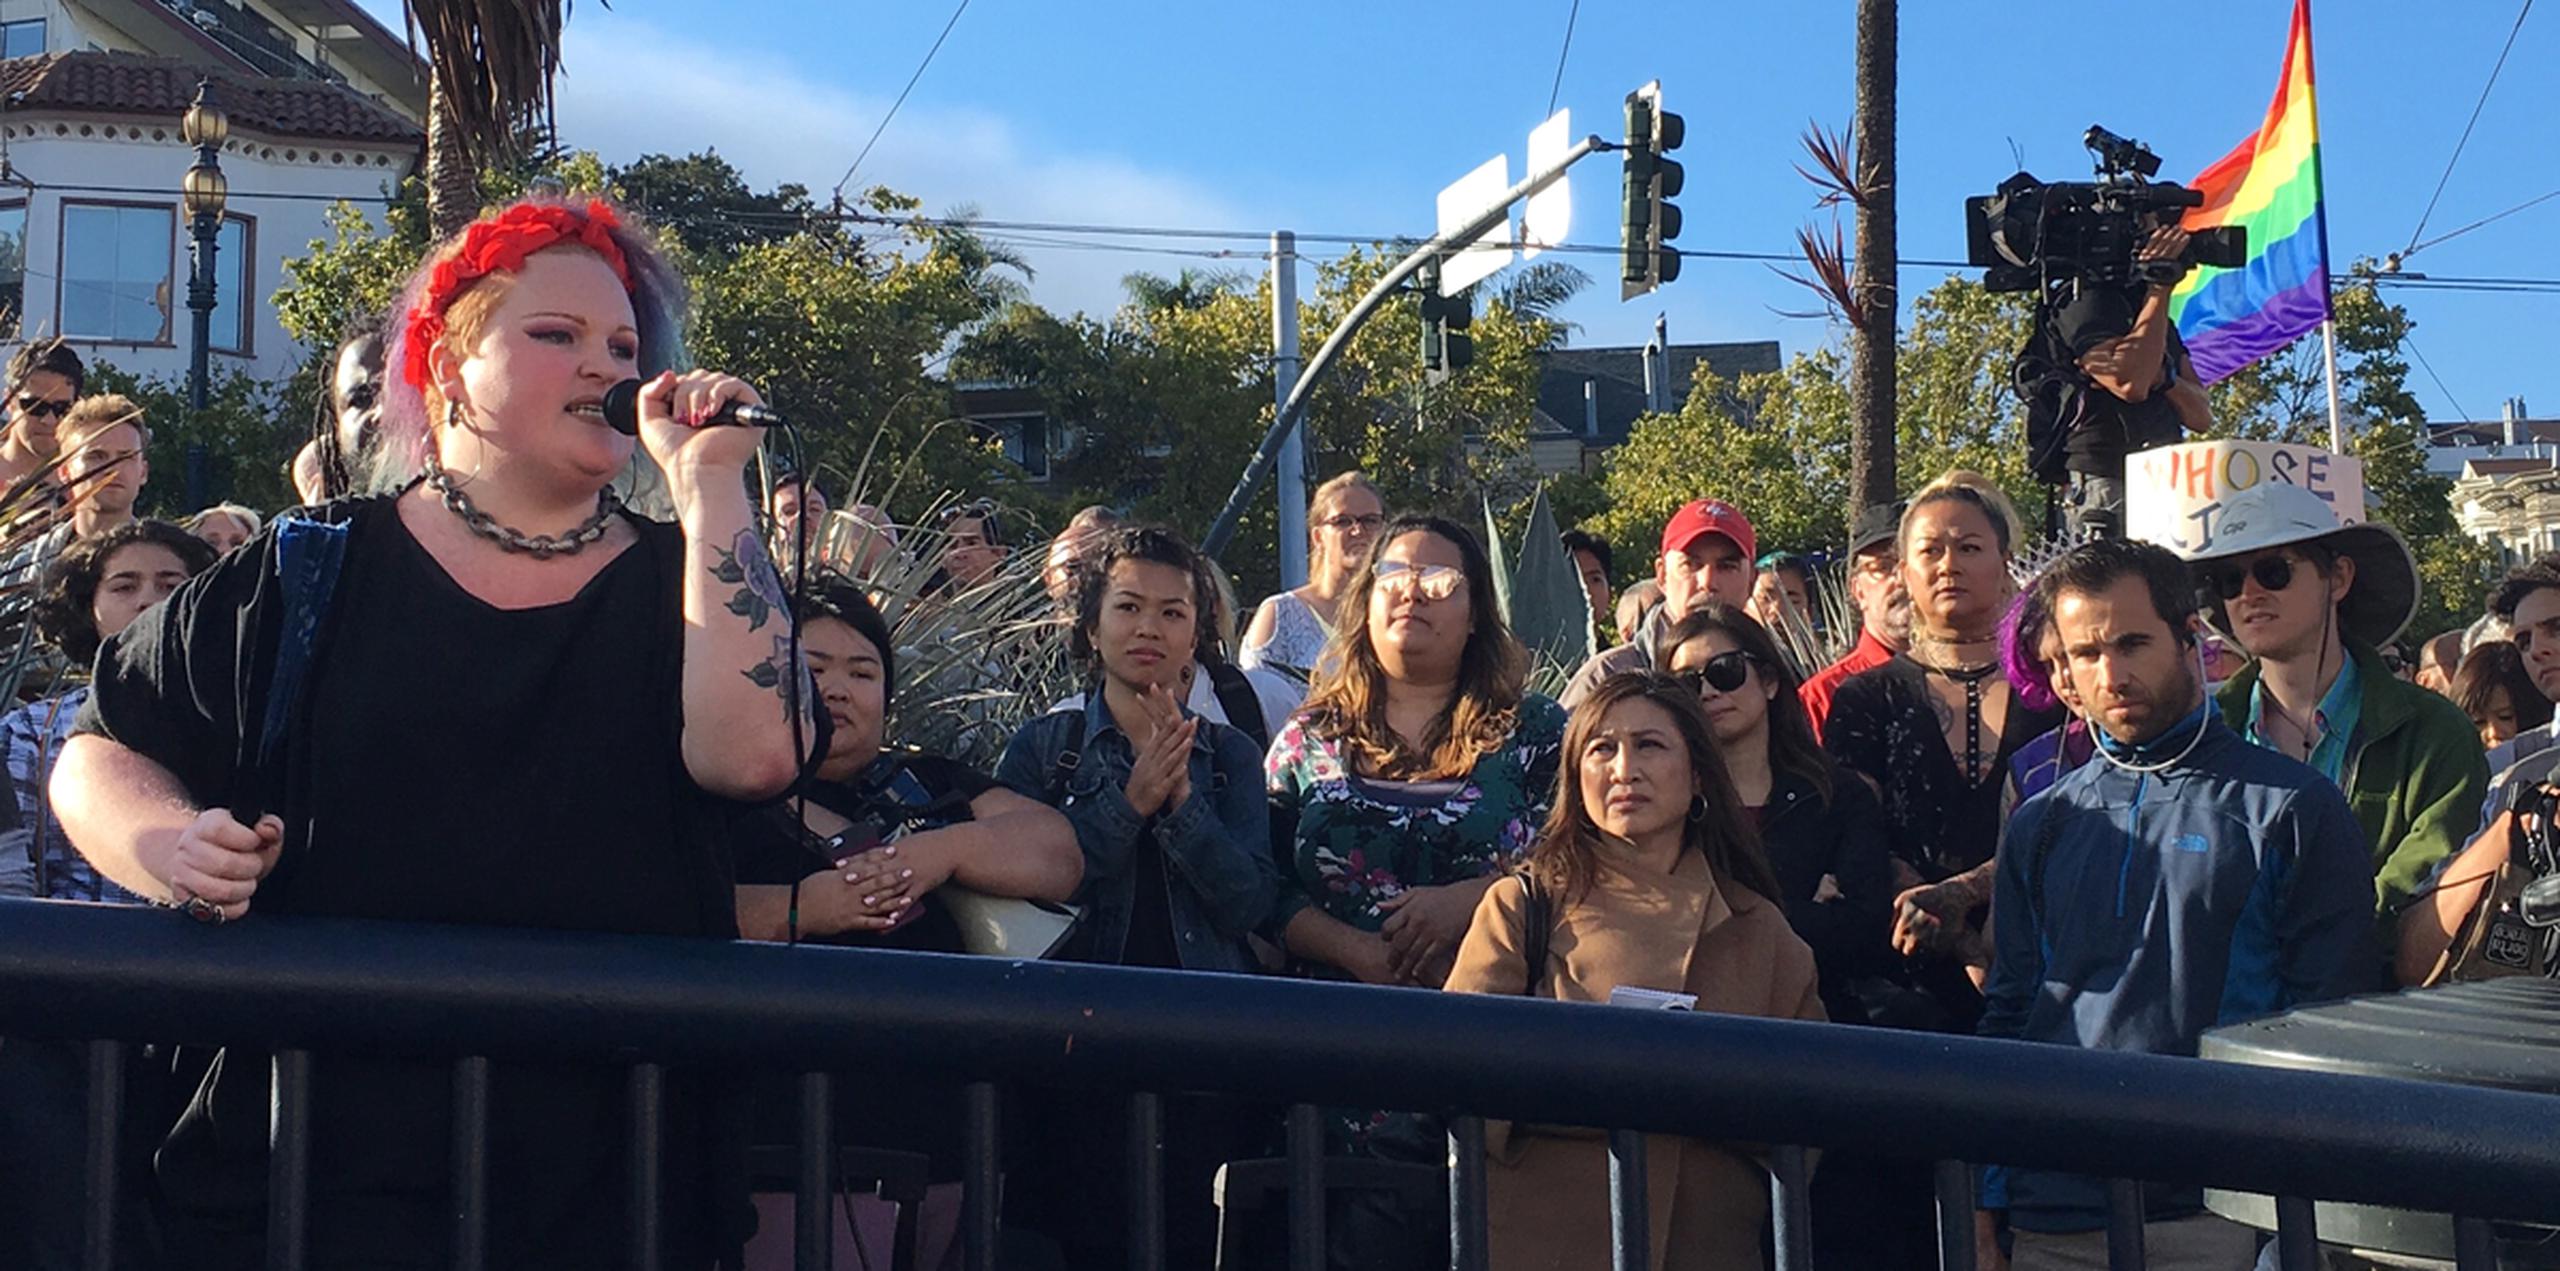 Los manifestantes acudieron a la plaza que lleva el nombre del emblemático activista de los derechos de los homosexuales Harvey Milk para protestar contra el repentino veto de Donald Trump a los militares transgénero en el ejército. (AP)